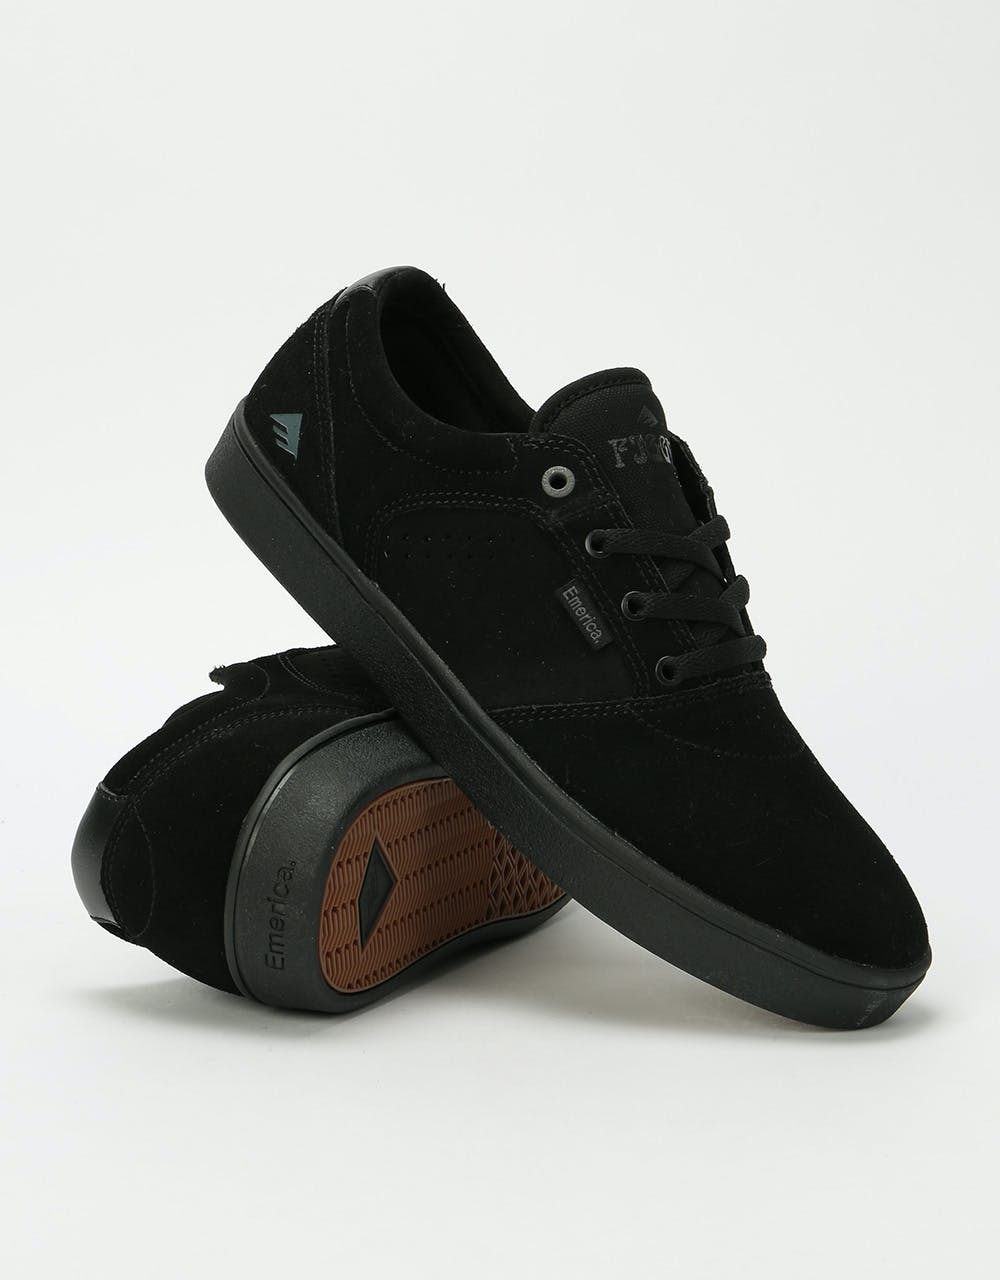 Emerica Figgy Dose Skate Shoes - Black/Black/Gum